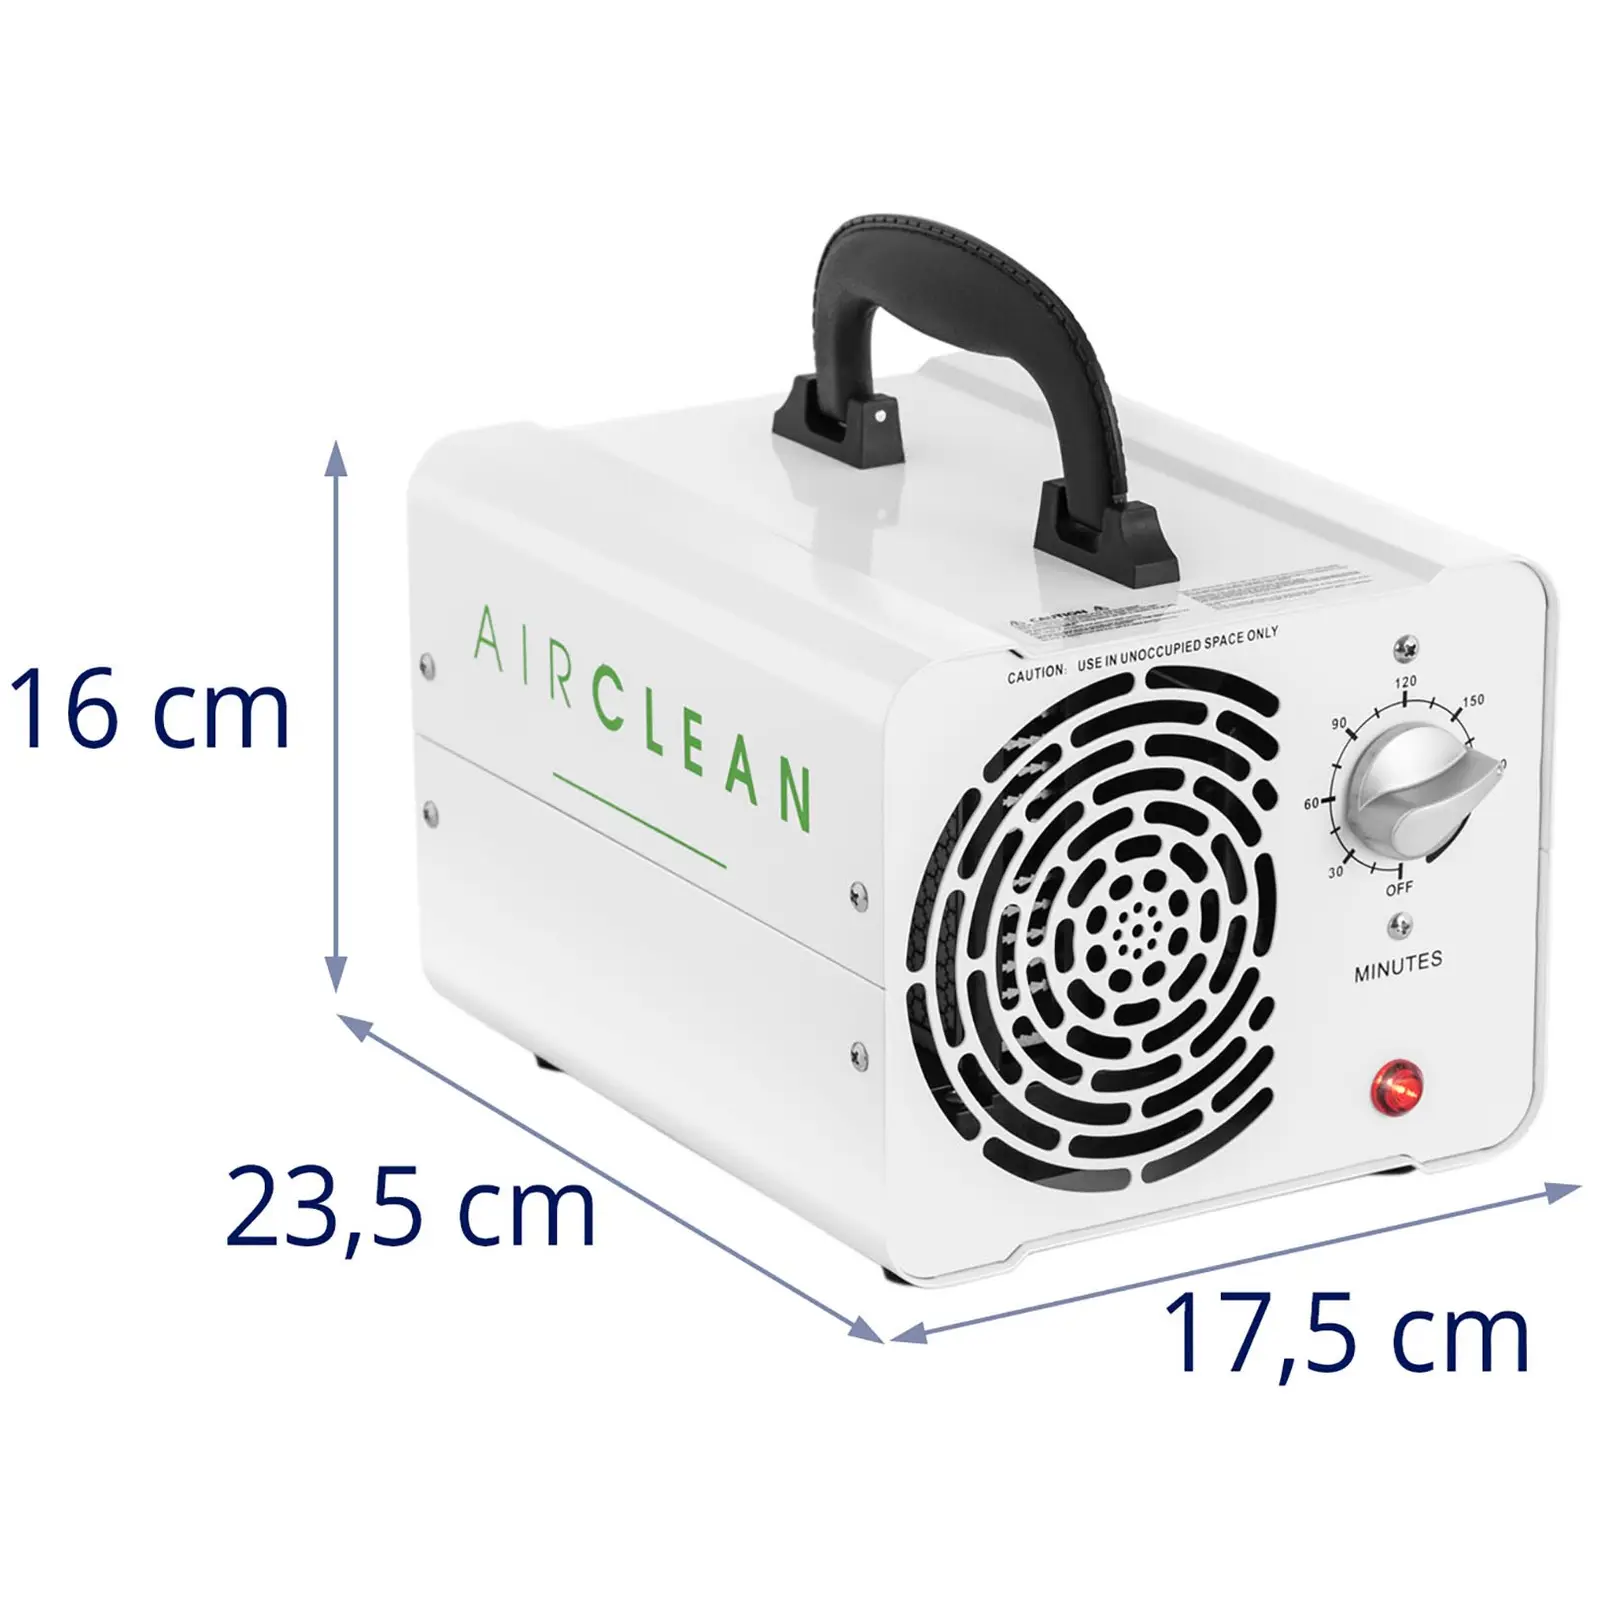 Generatore di ozono portatile - 10.000 mg/h - 100 W - Timer 180 min